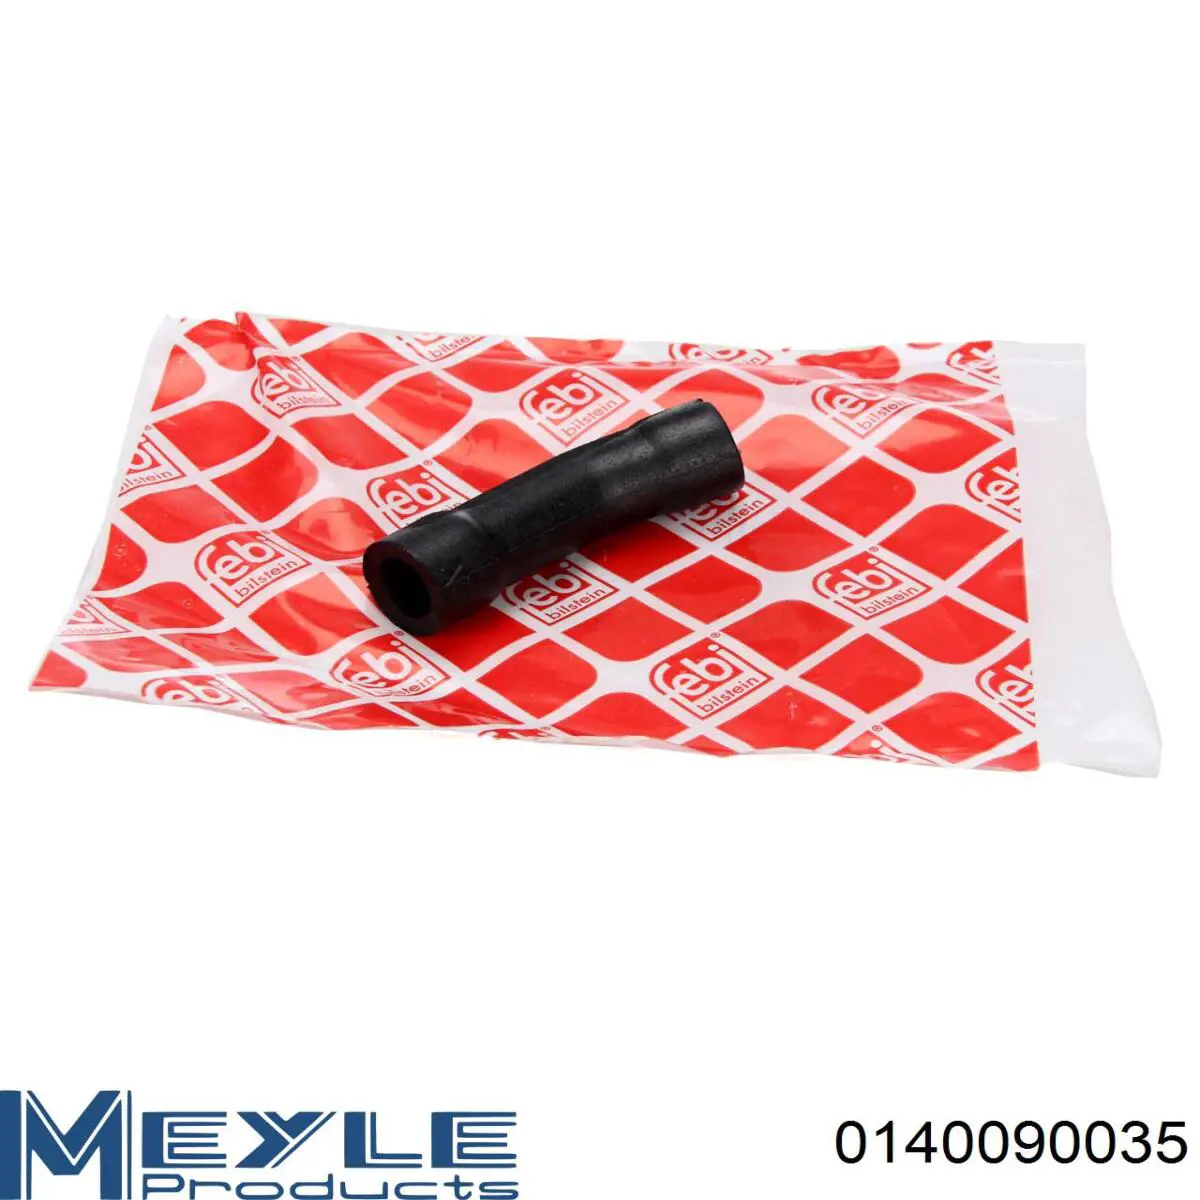 140090035 Meyle tubo de ventilacion del carter (separador de aceite)